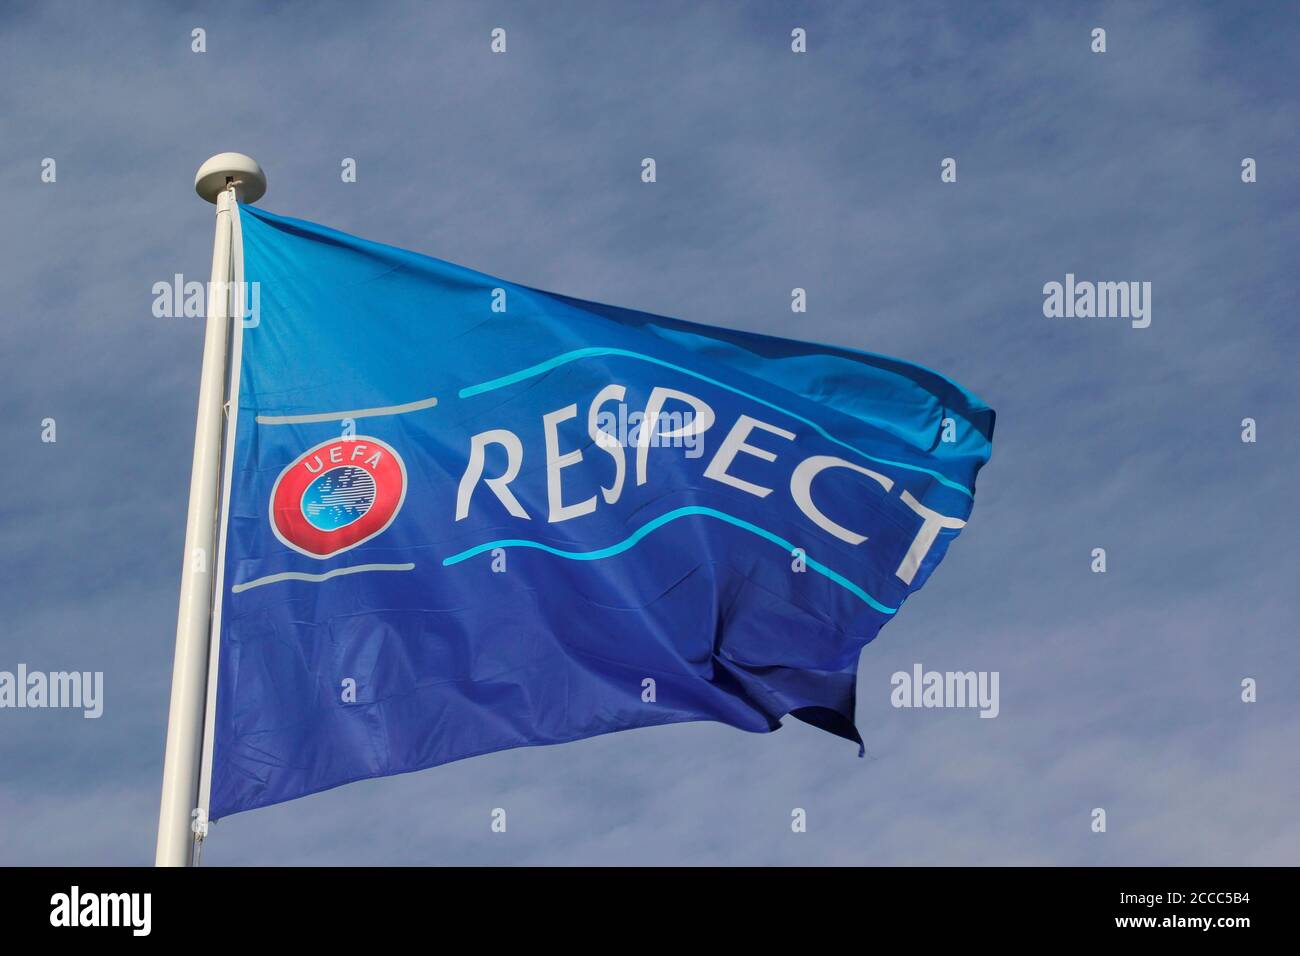 La campaña de respeto de la UEFA contra el racismo y para promover el trabajo hacia la unidad y el respeto a través del género, la raza, la religión y la habilidad Foto de Tony Henshaw Foto de stock